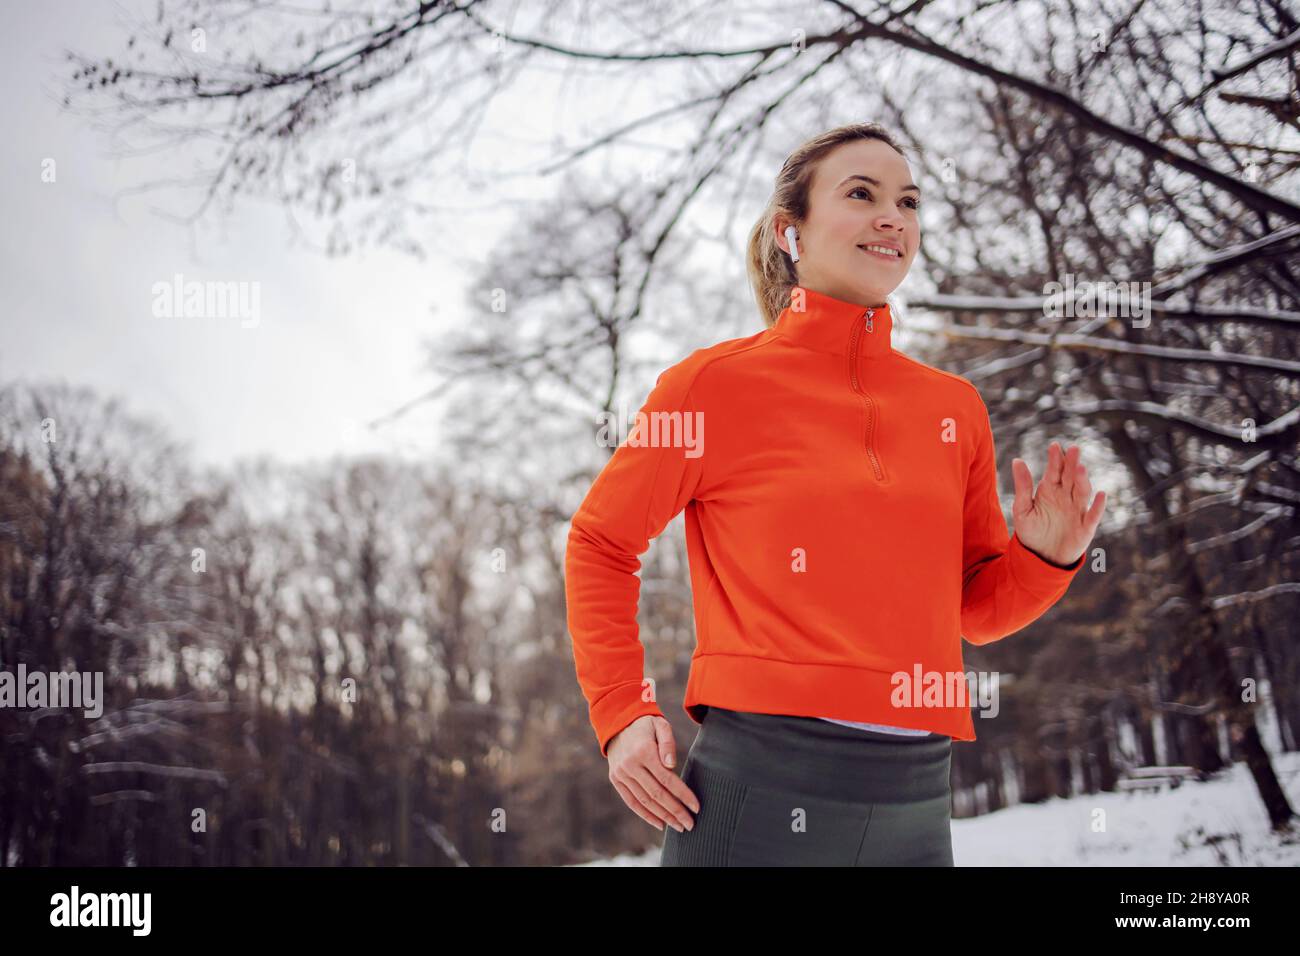 FIT sportswoman courir dans la nature lors d'une journée d'hiver enneigée.Temps froid, neige, vie saine, fitness, forêt Banque D'Images